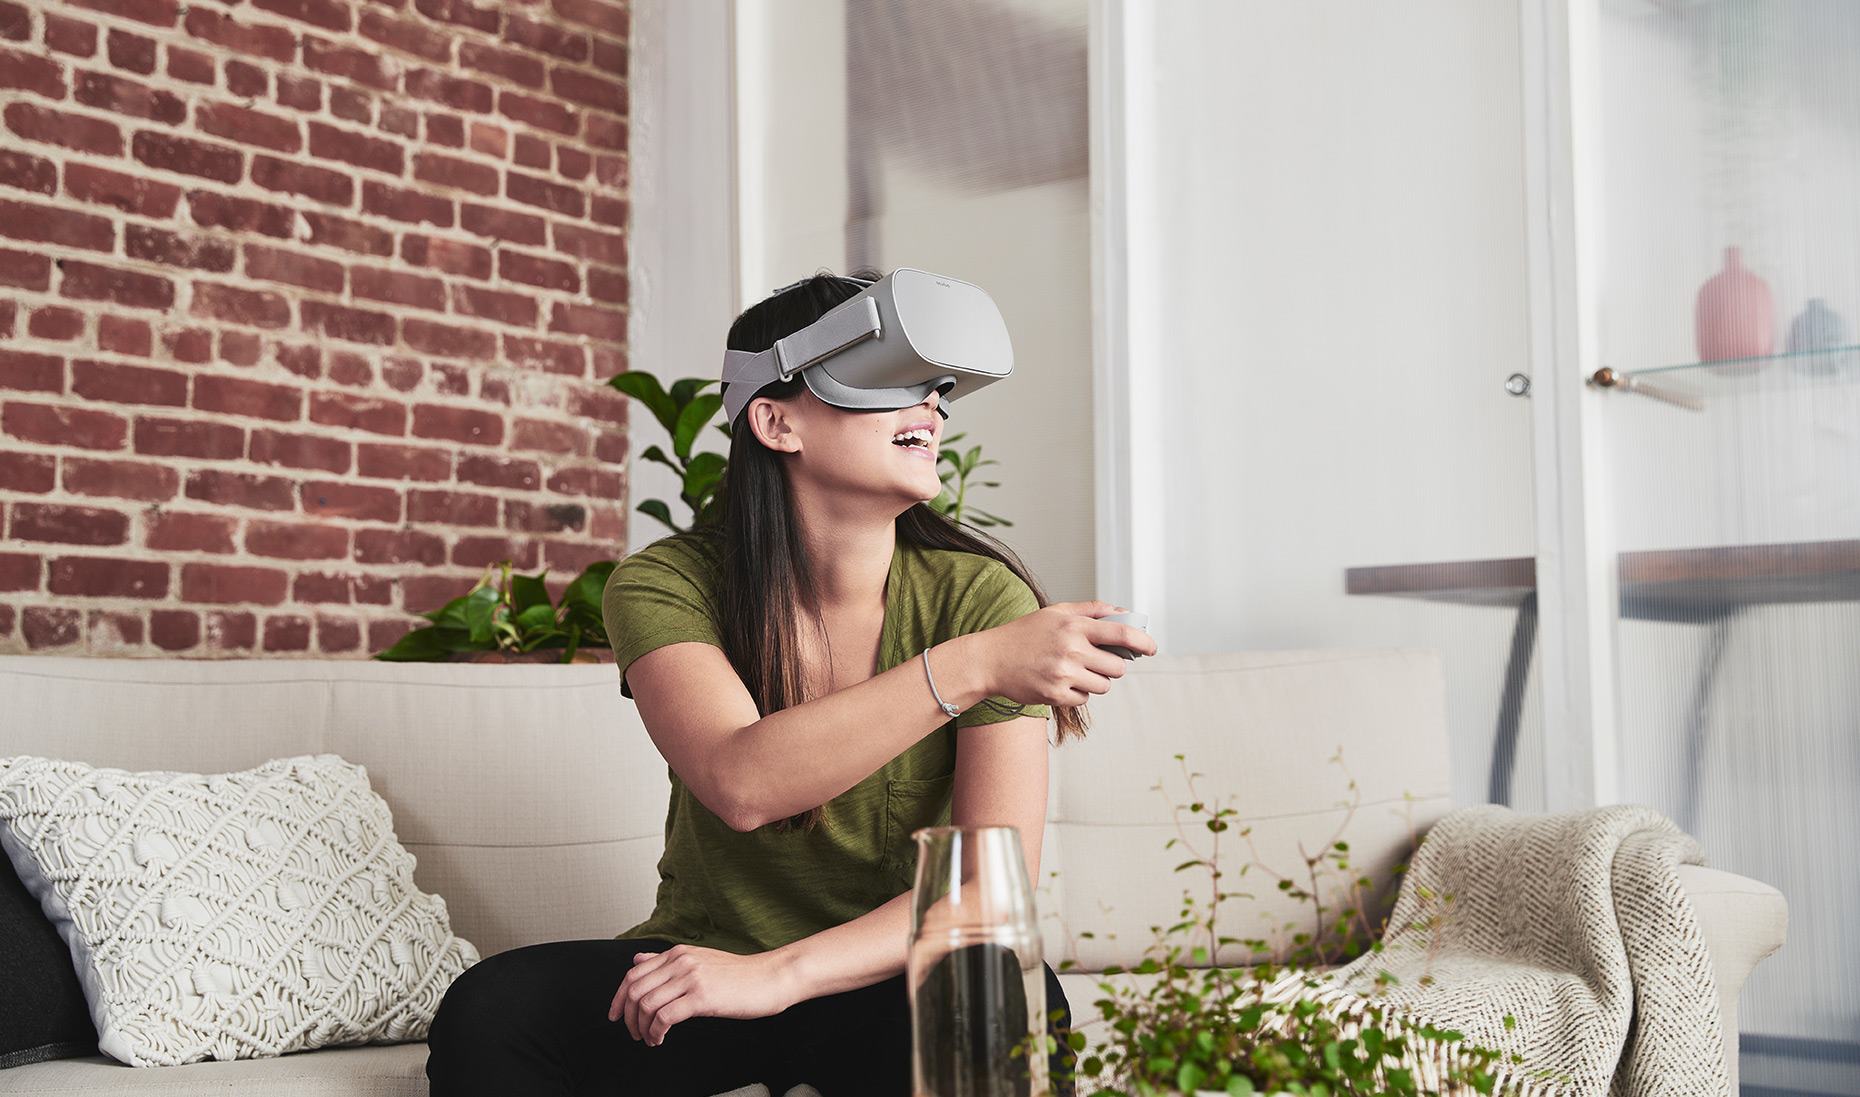 Rekordverkäufe bei Virtual-Reality-Headsets